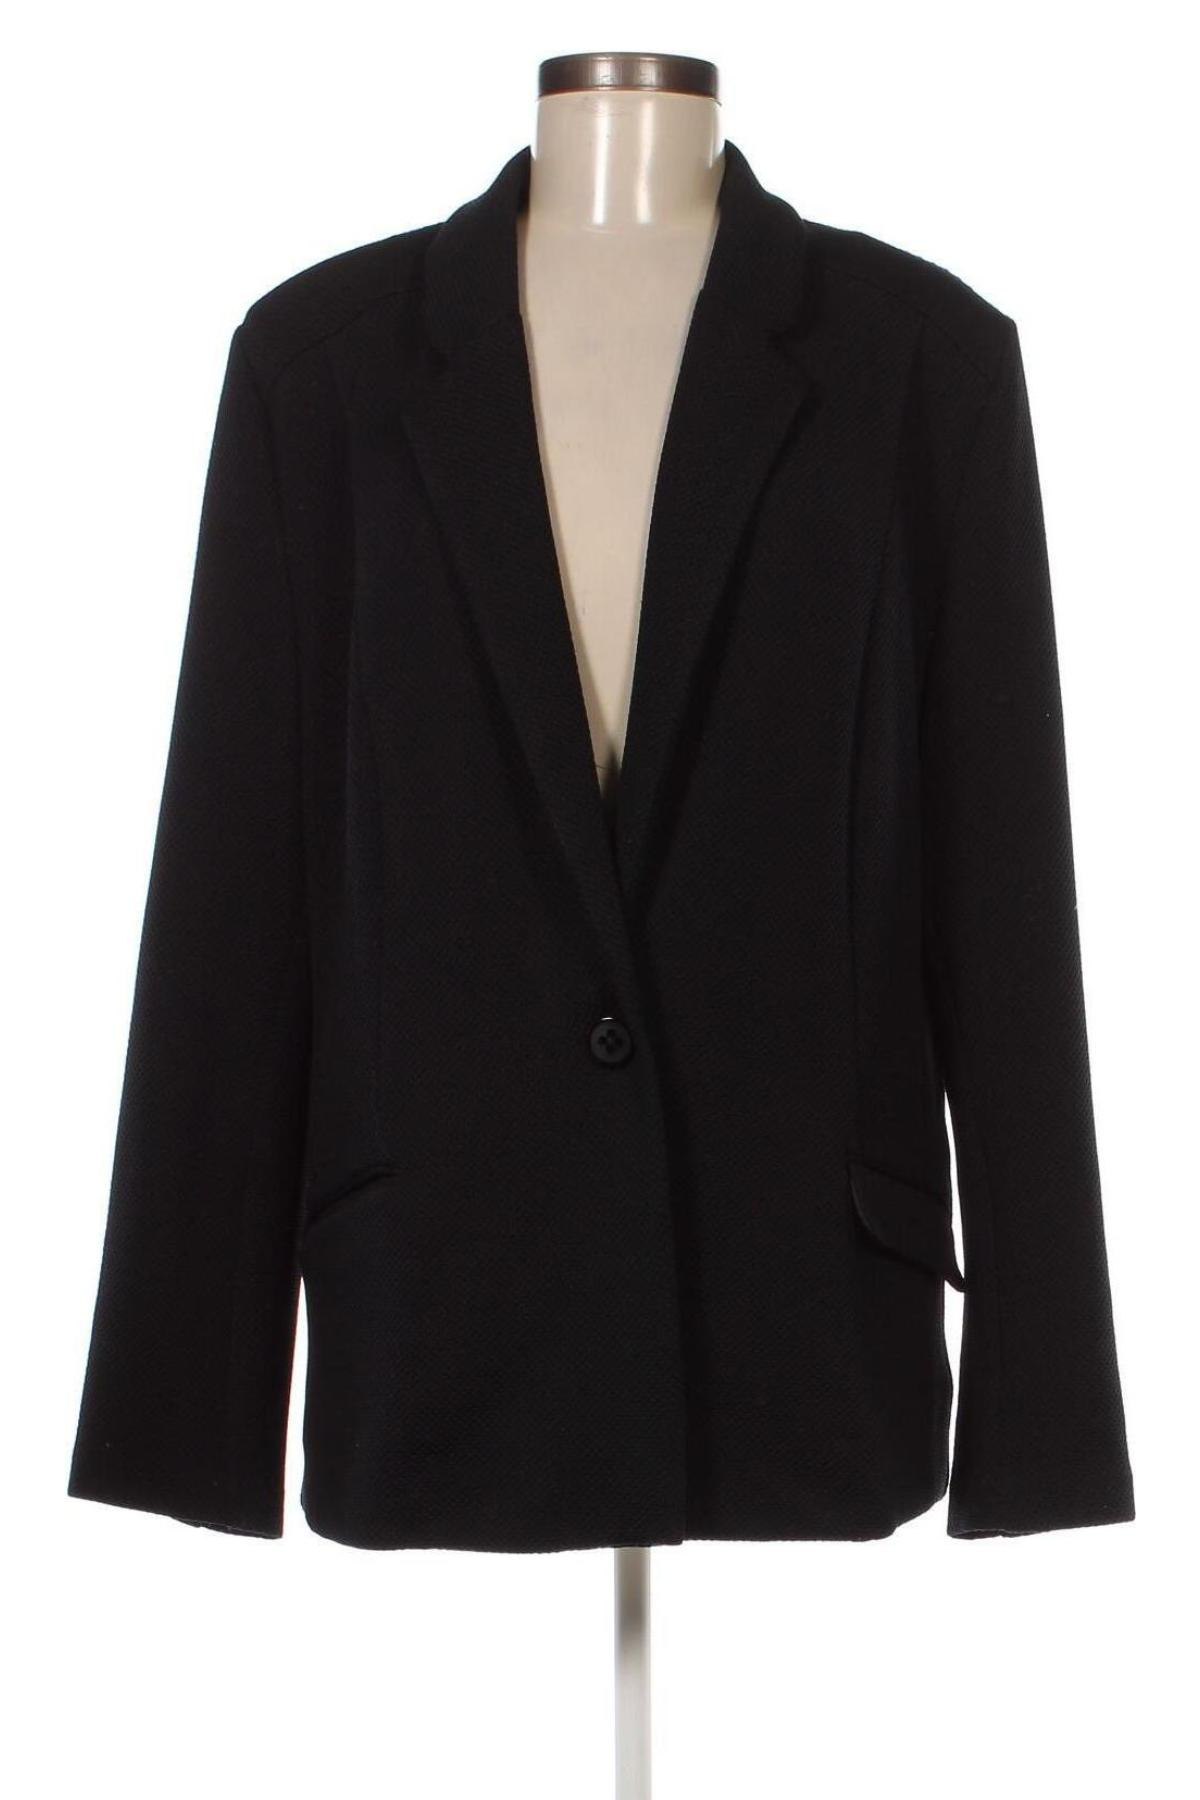 Дамско сако Patrizia Dini, Размер XL, Цвят Черен, Цена 36,00 лв.